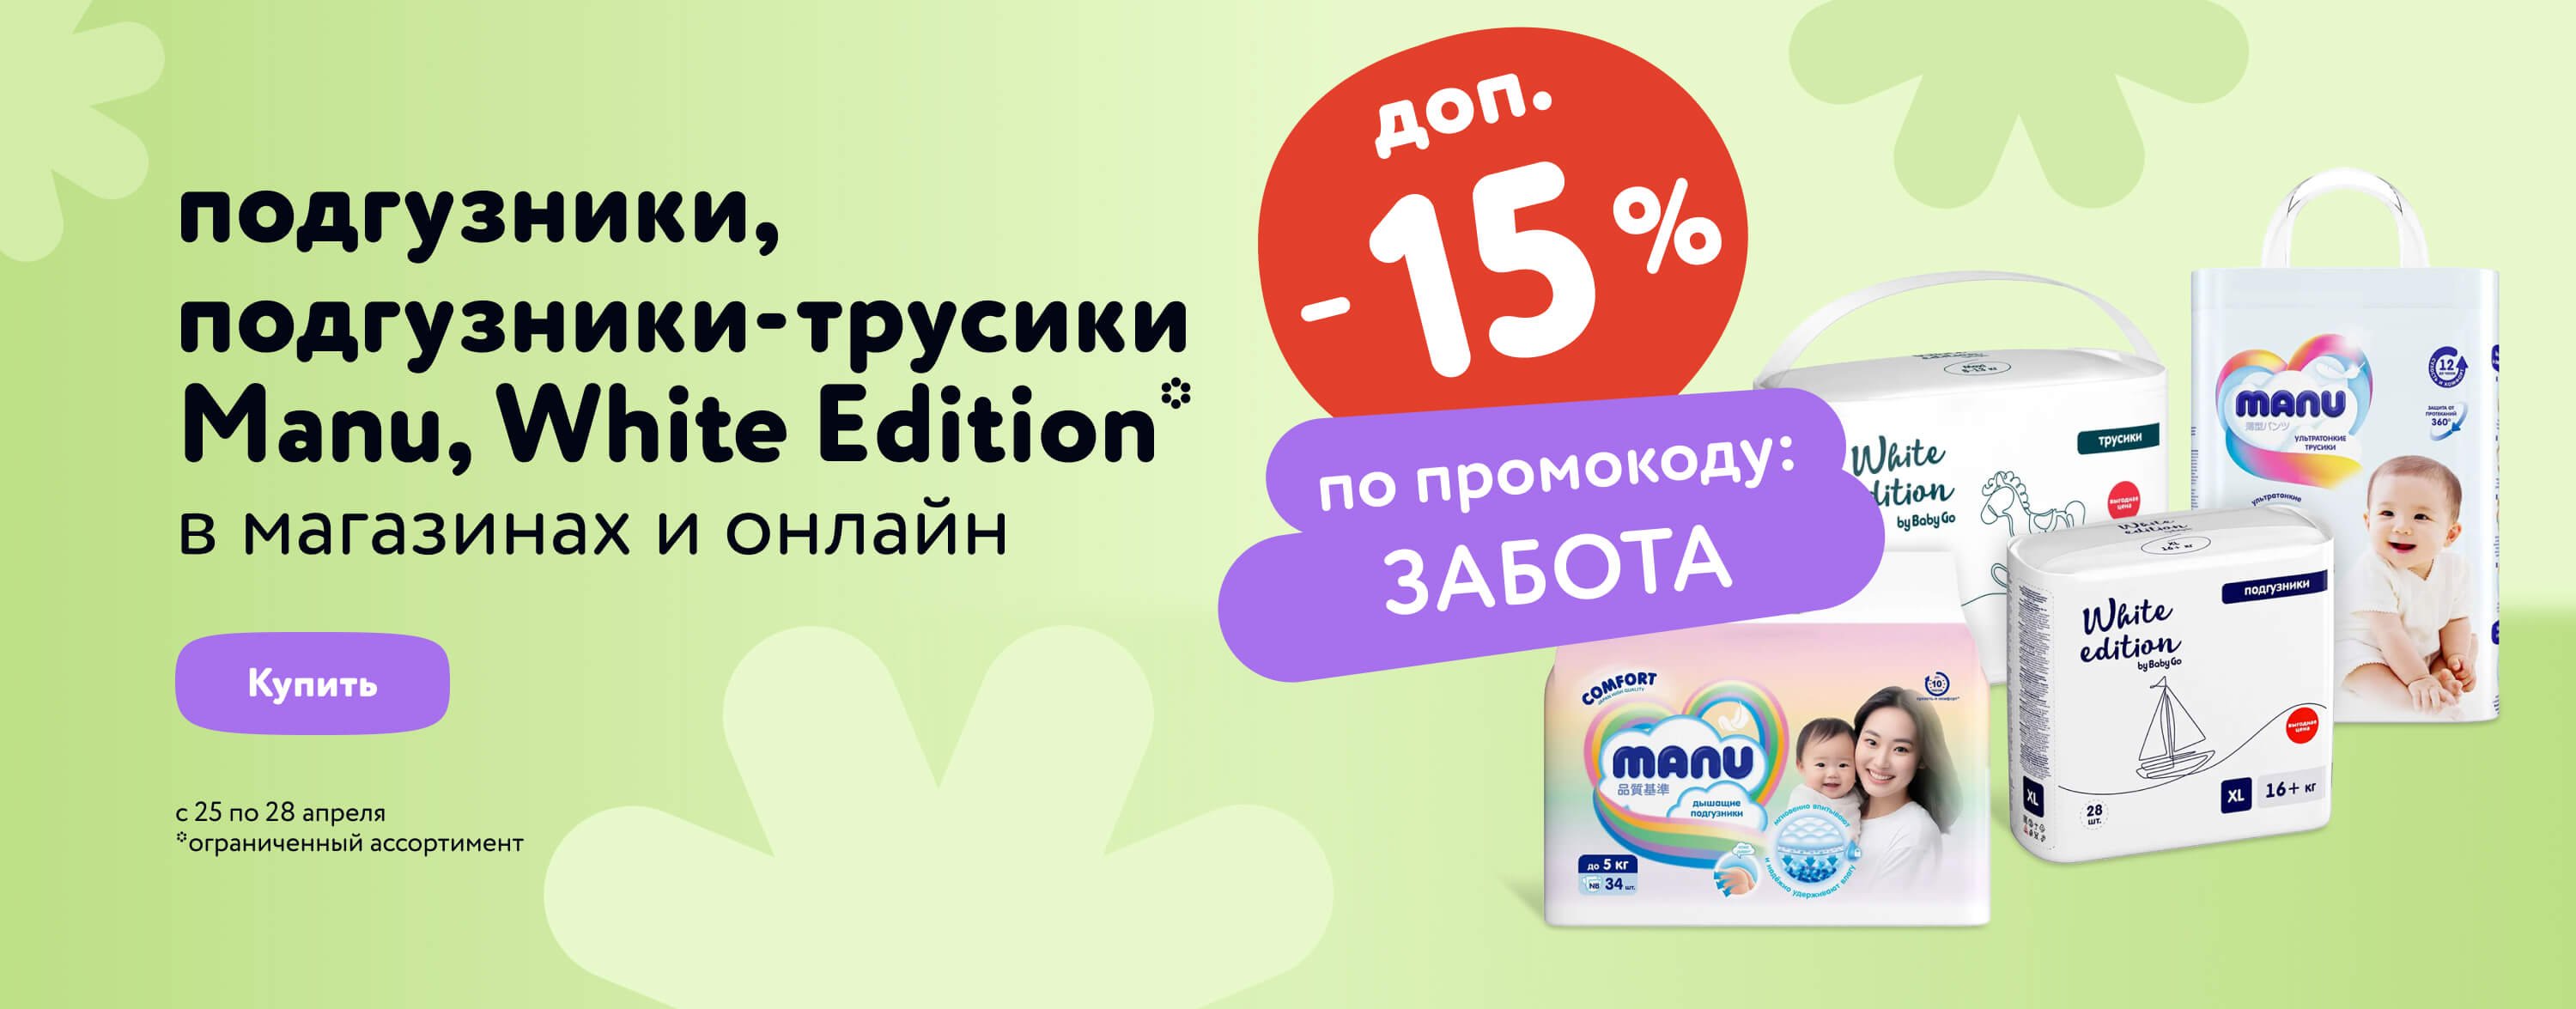 Доп. скидка 15 % по промокоду на подгузники, подгузники-трусики Manu, White Edition